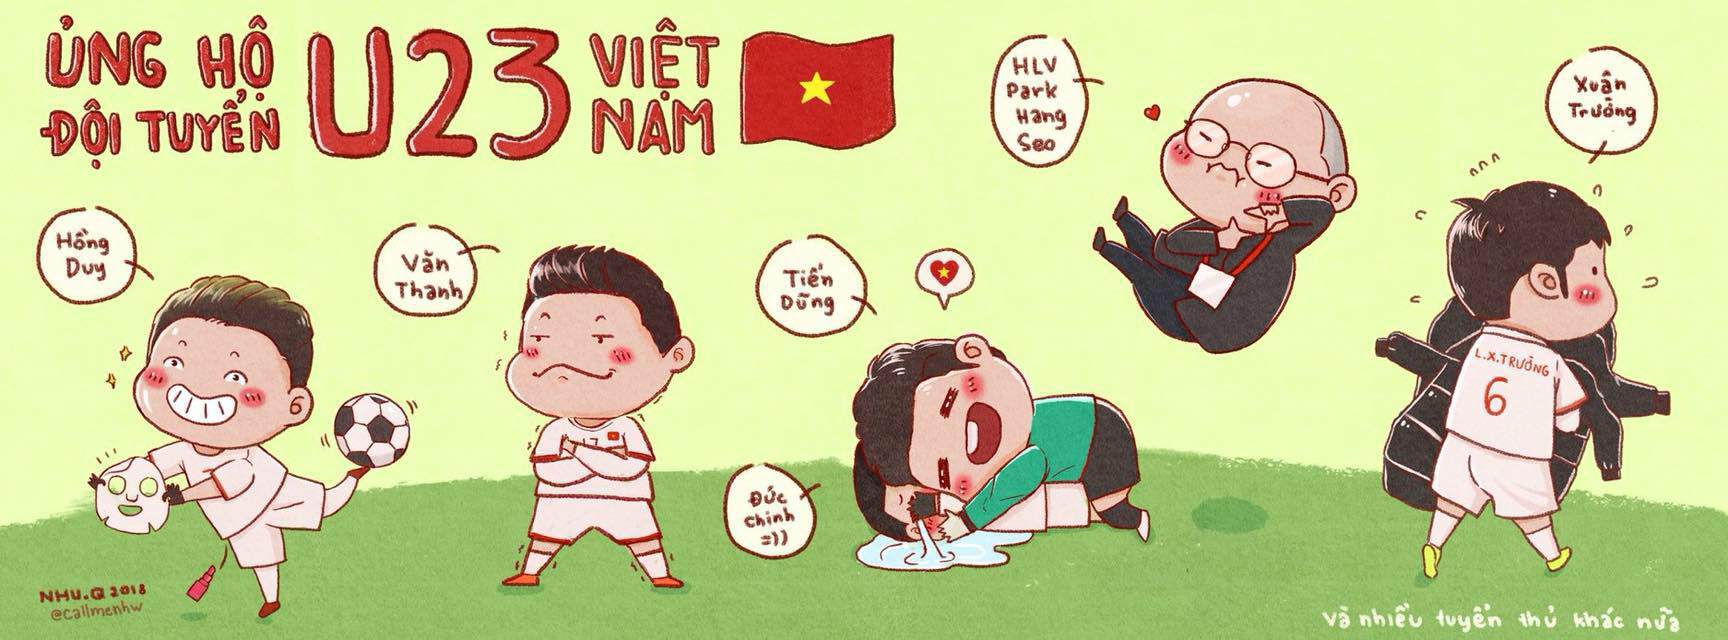 Ảnh Chibi Cầu Thủ U23 Việt Nam Khiến Mọi Người Cười Lăn